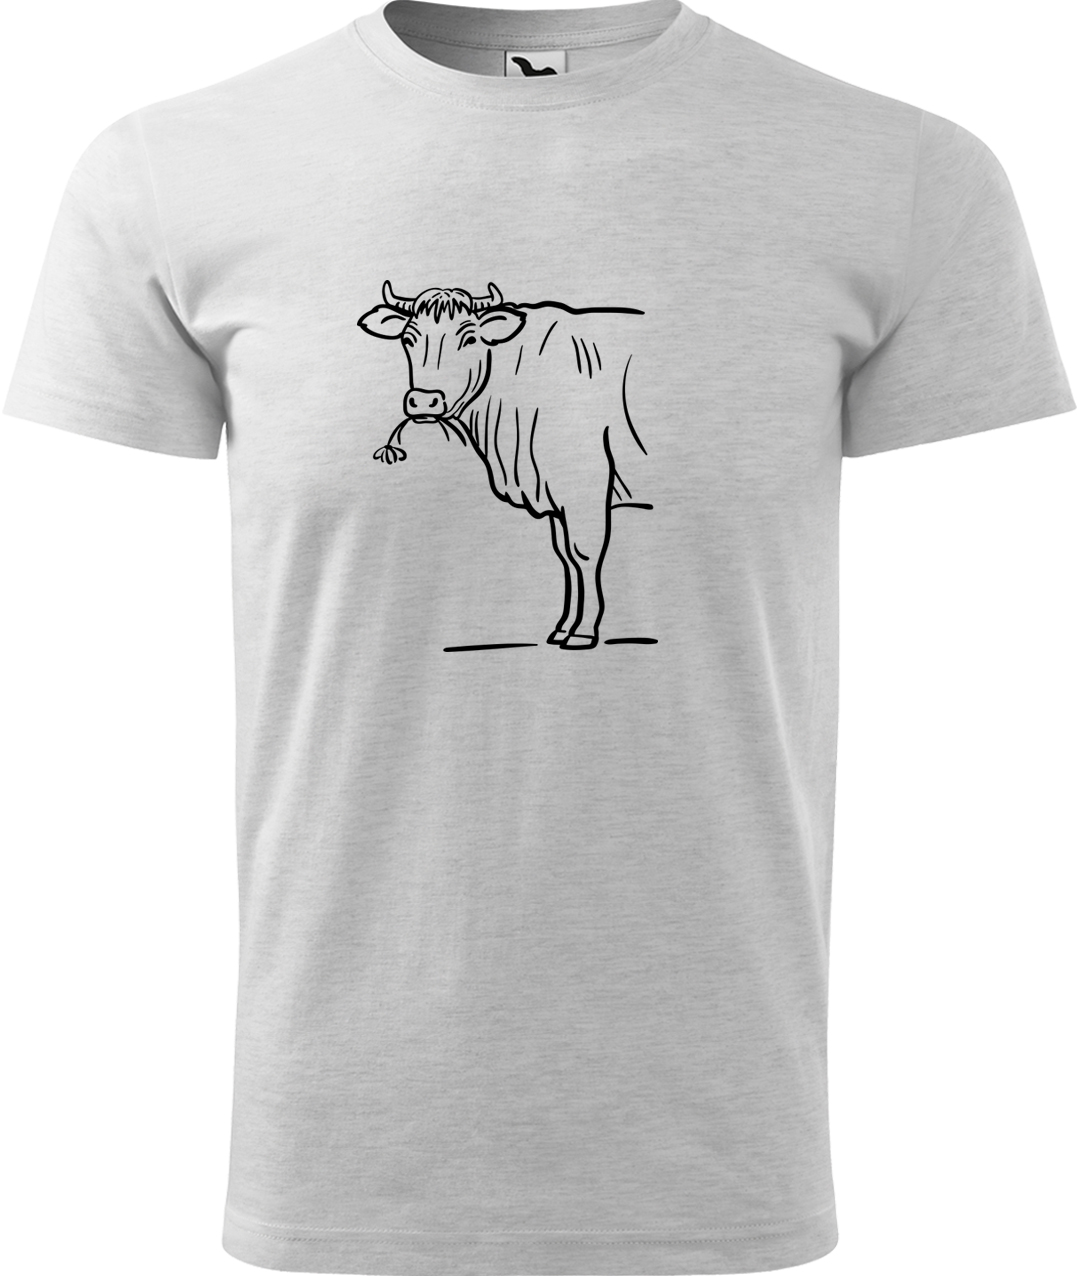 Pánské tričko s krávou - Býk Velikost: M, Barva: Světle šedý melír (03), Střih: pánský